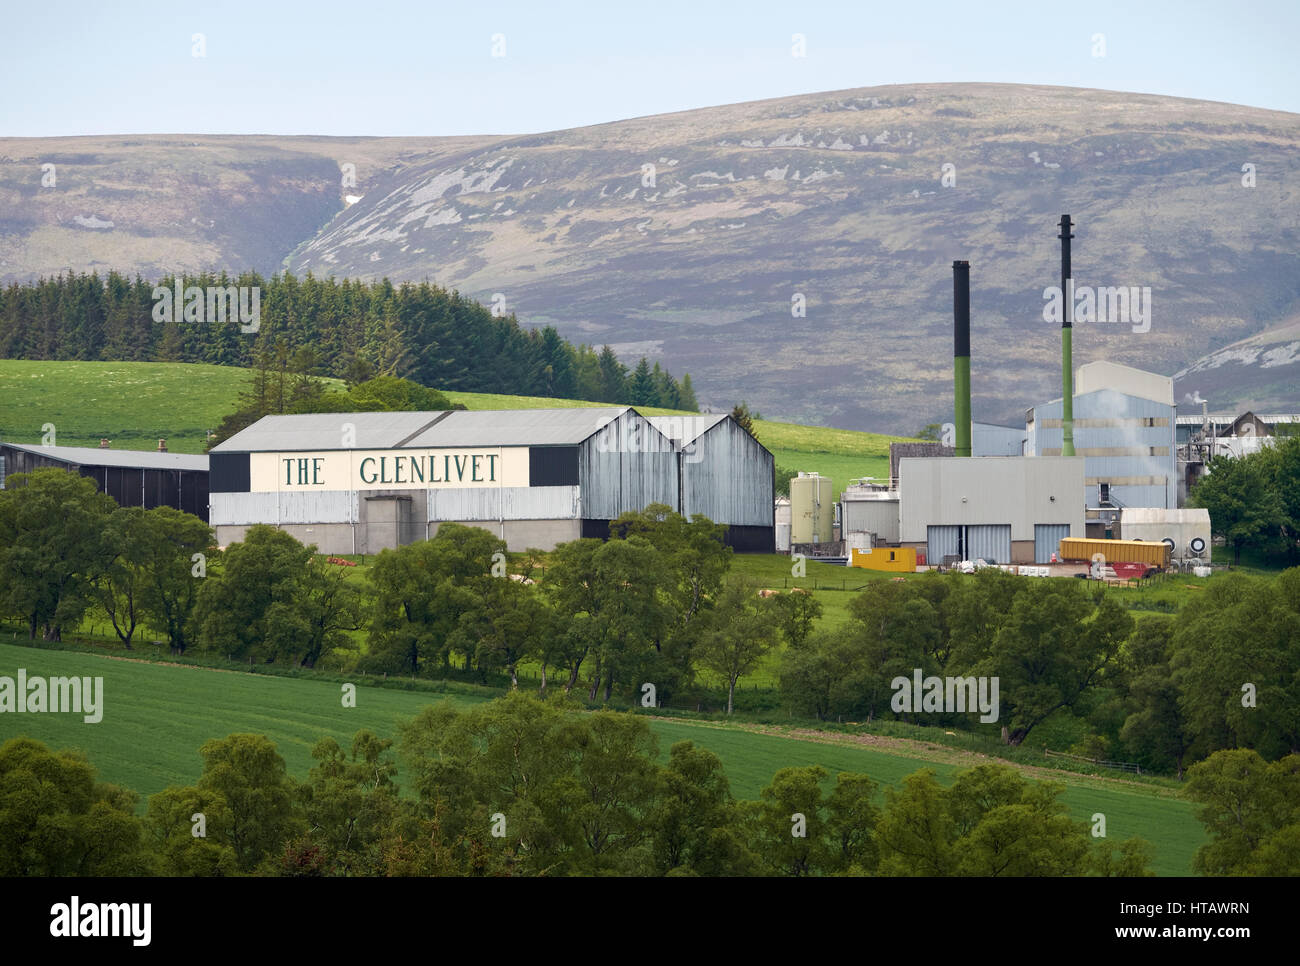 Der Glenlivet Whisky Brennerei in der Nähe der Cairngorms in den Highlands von Schottland. Stockfoto